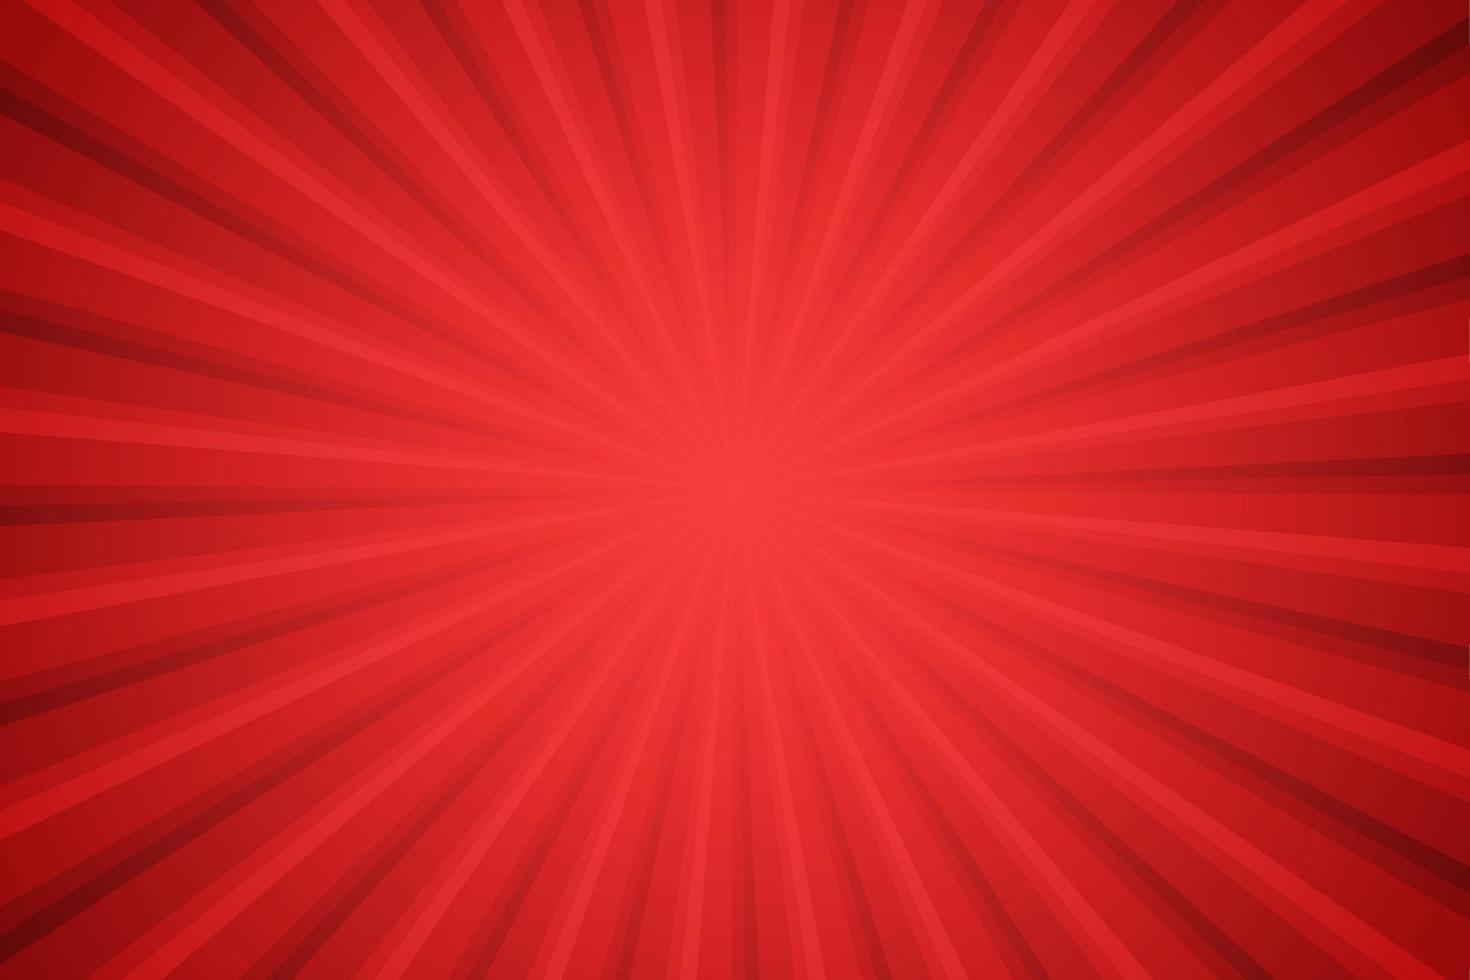 rayos de sol estilo retro vintage sobre fondo rojo, fondo de patrón de rayos de sol. rayos ilustración de vector de banner de verano. fondo de pantalla de rayos de sol abstractos para publicidad de redes sociales de negocios de plantilla.